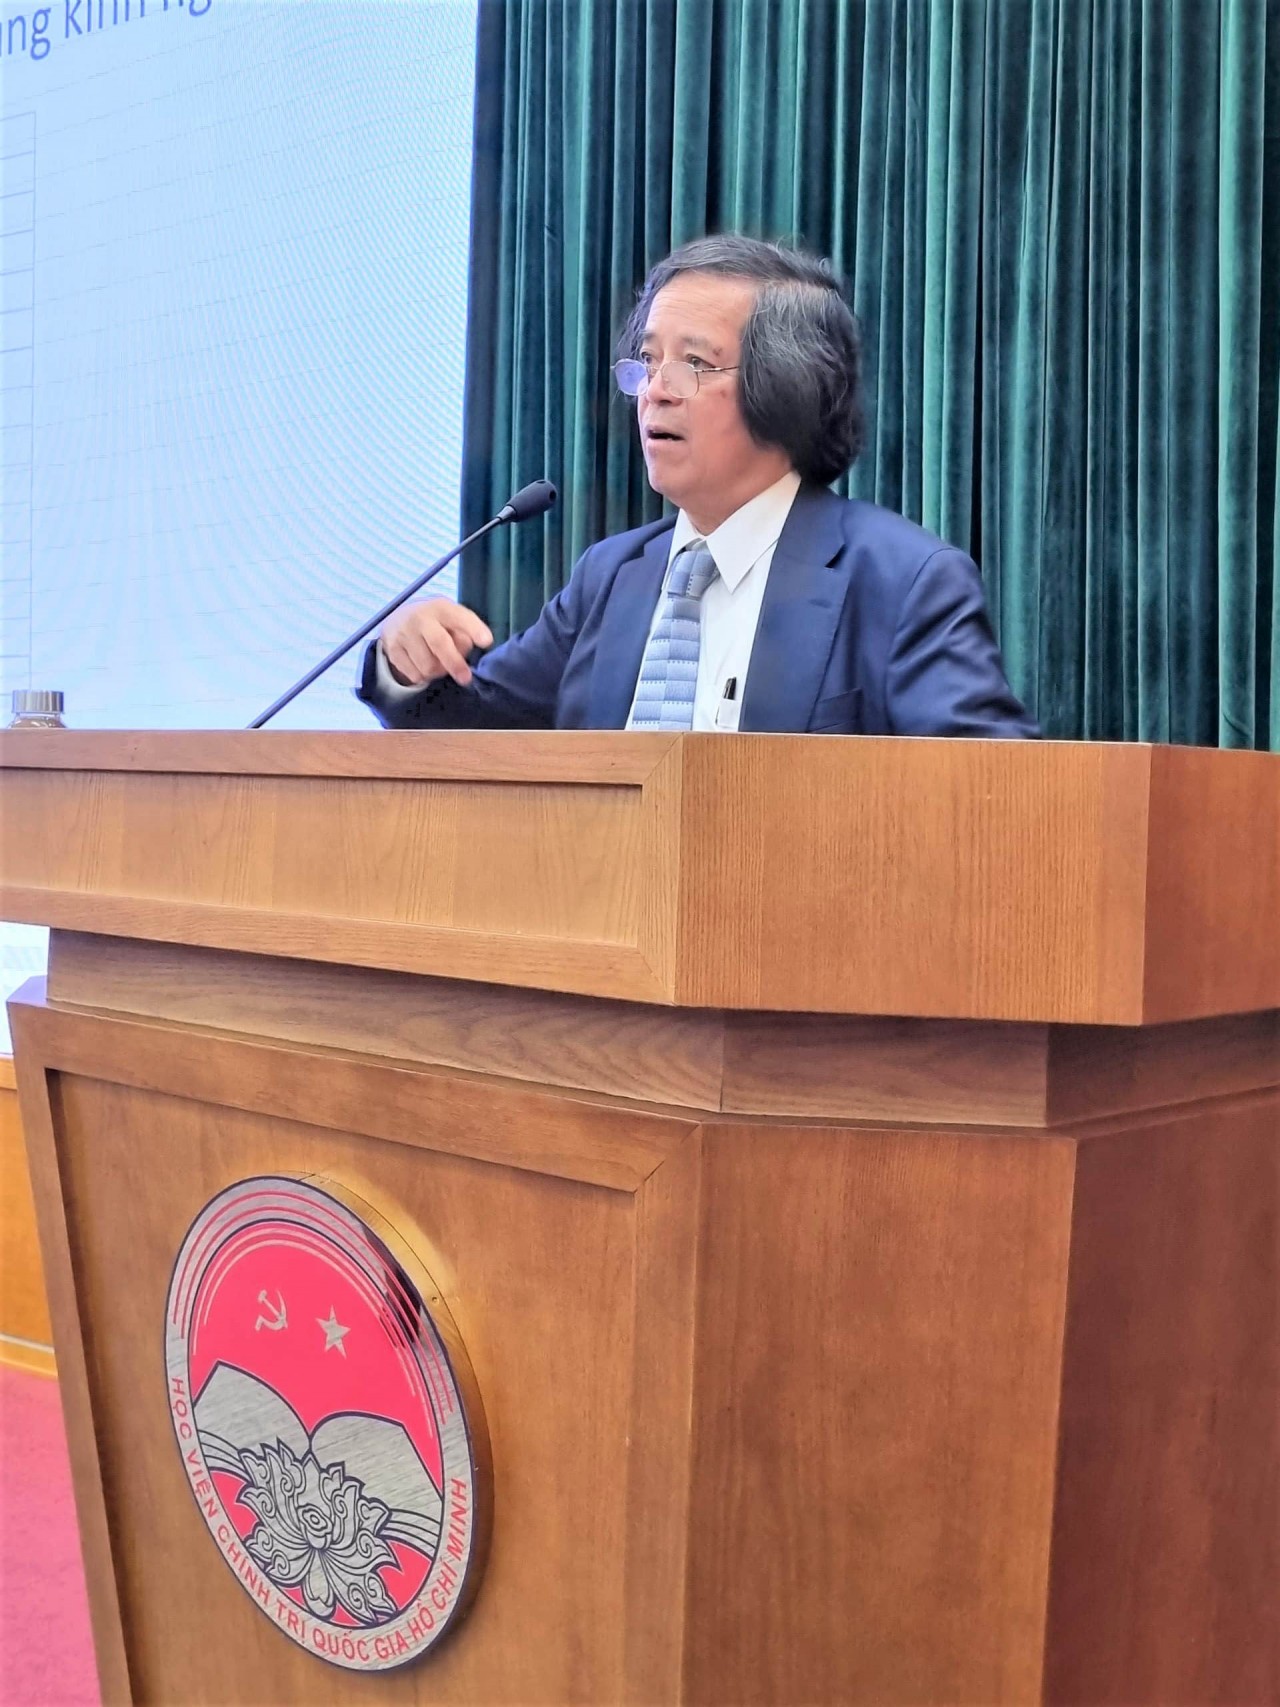 Professor Tran Van Tho - Honorary Professor of Waseda University (Japan), speaking at the seminar